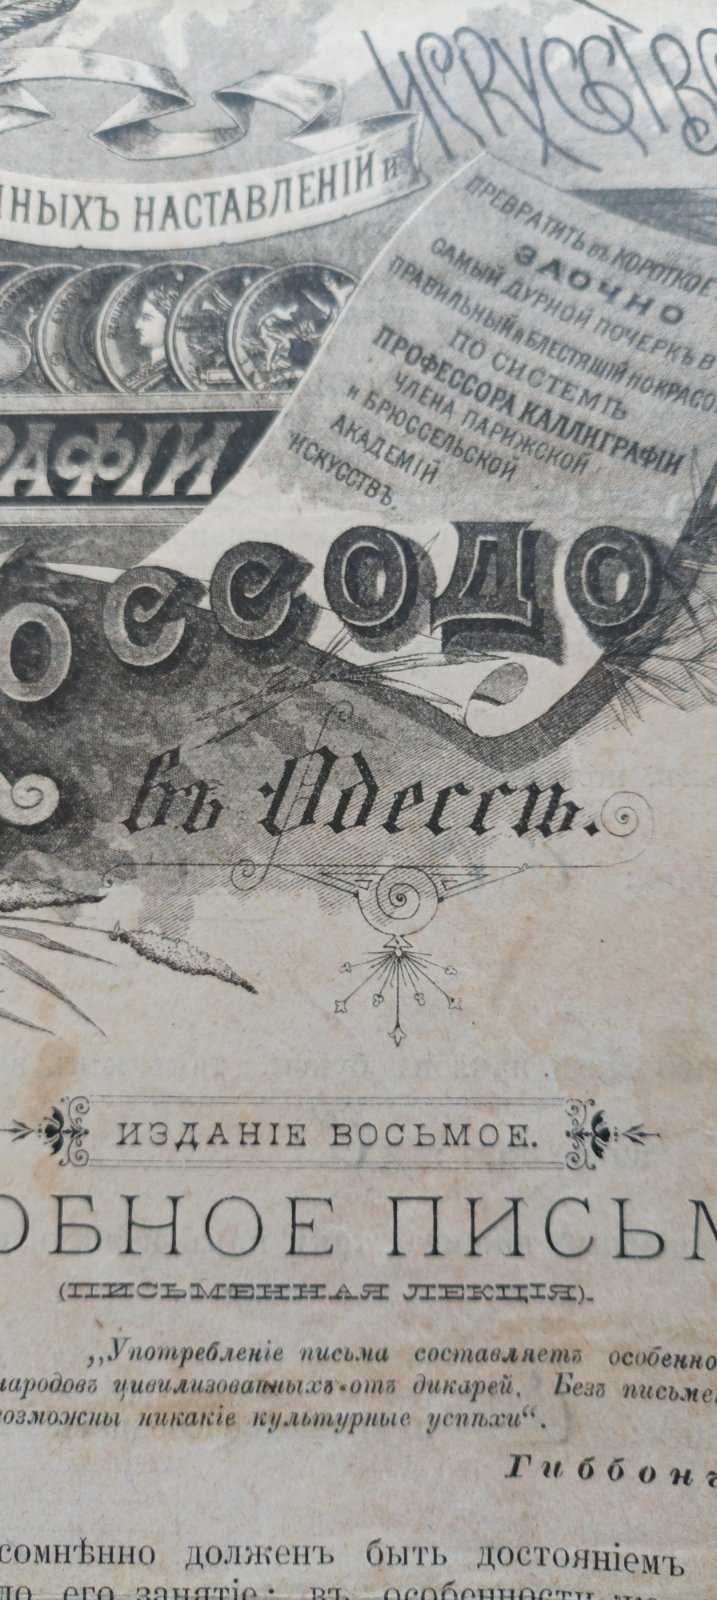 Одесса, 1893 года, уроки каллиграфии. Антиквариат.